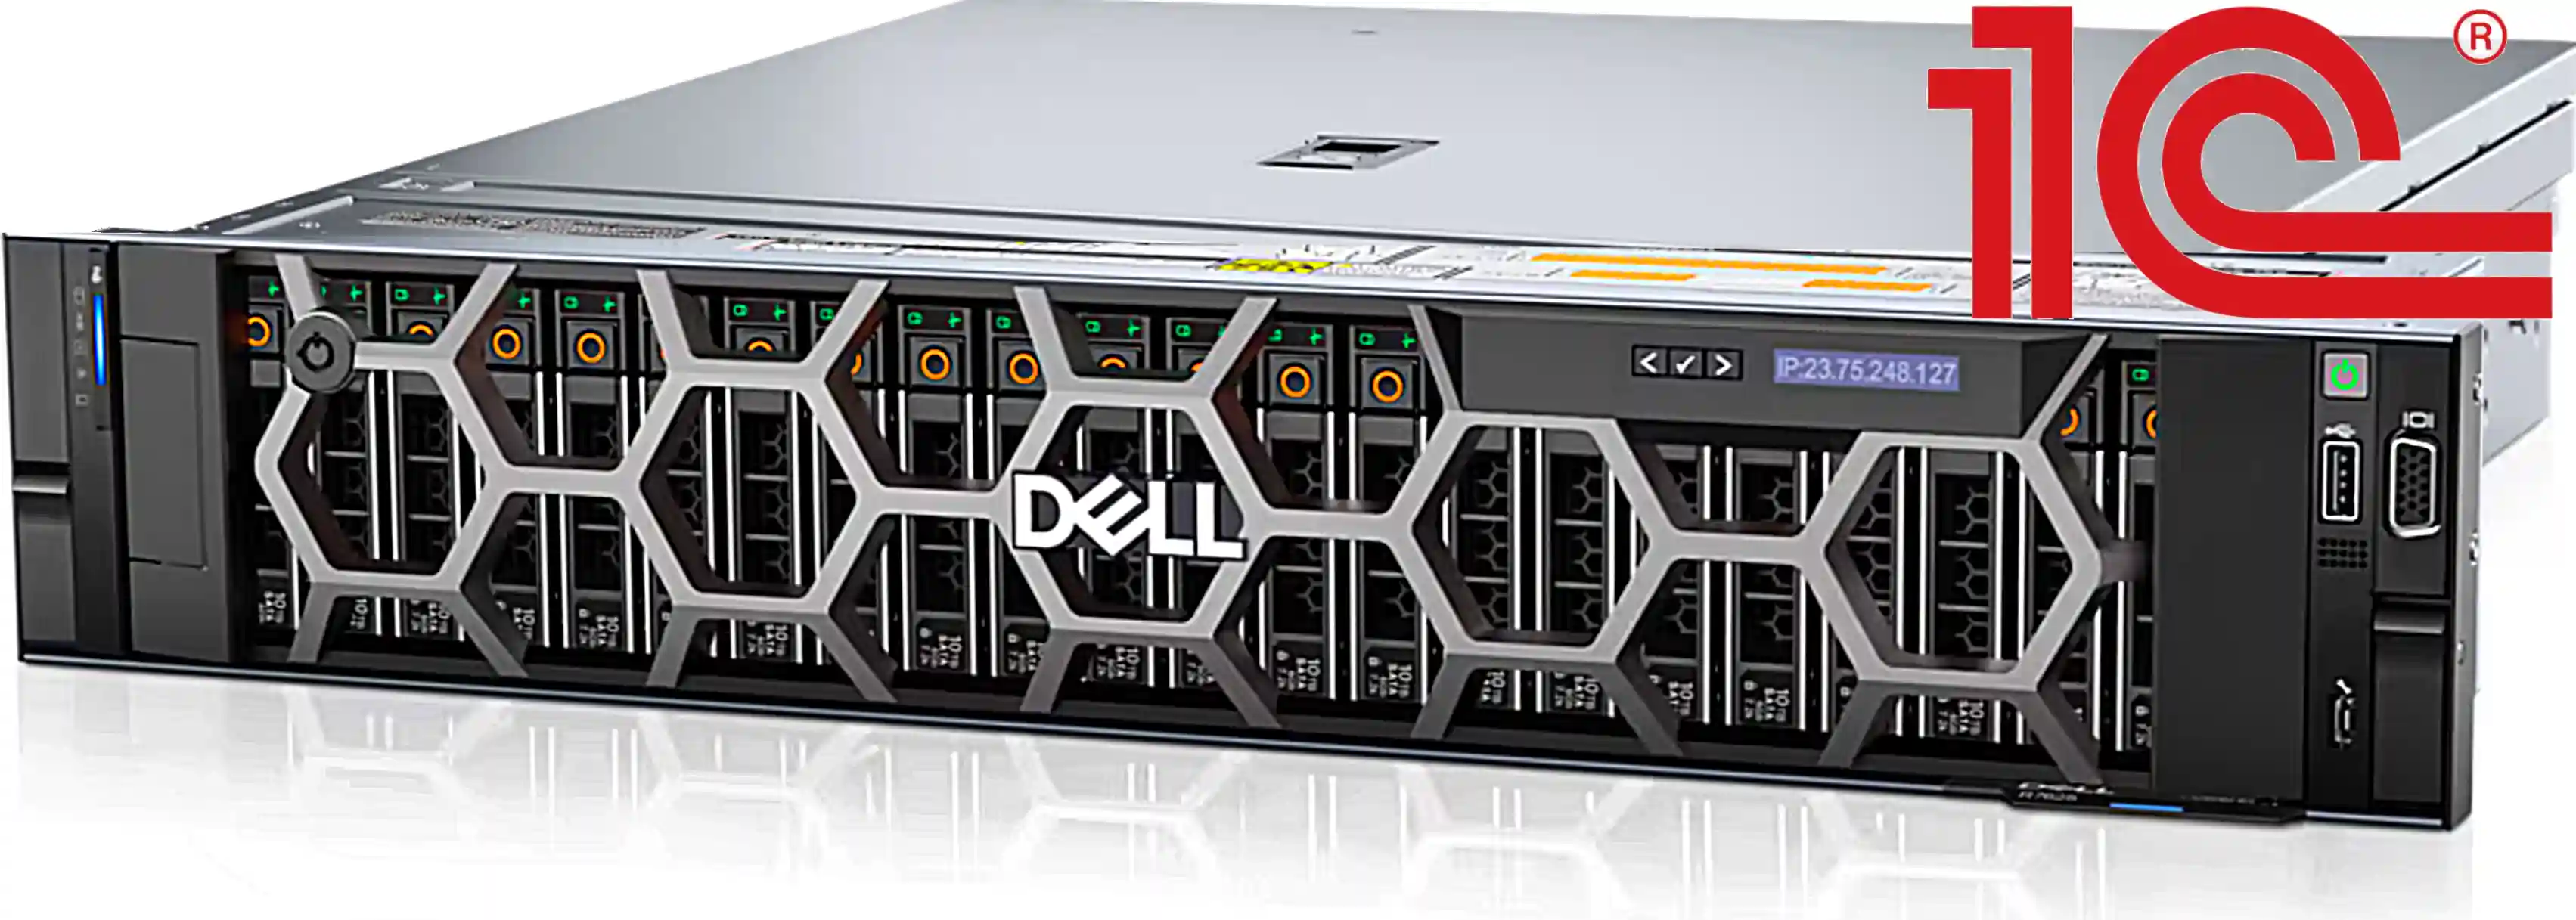 Купить сервер Dell PowerEdge цена на новые серверы Продажа в Москве выбор онлайн конфигураторы по цене сервер и схд Dell EMC решение для бизнес процессов и серверное оборудование Dell EMC Cистемы хранения